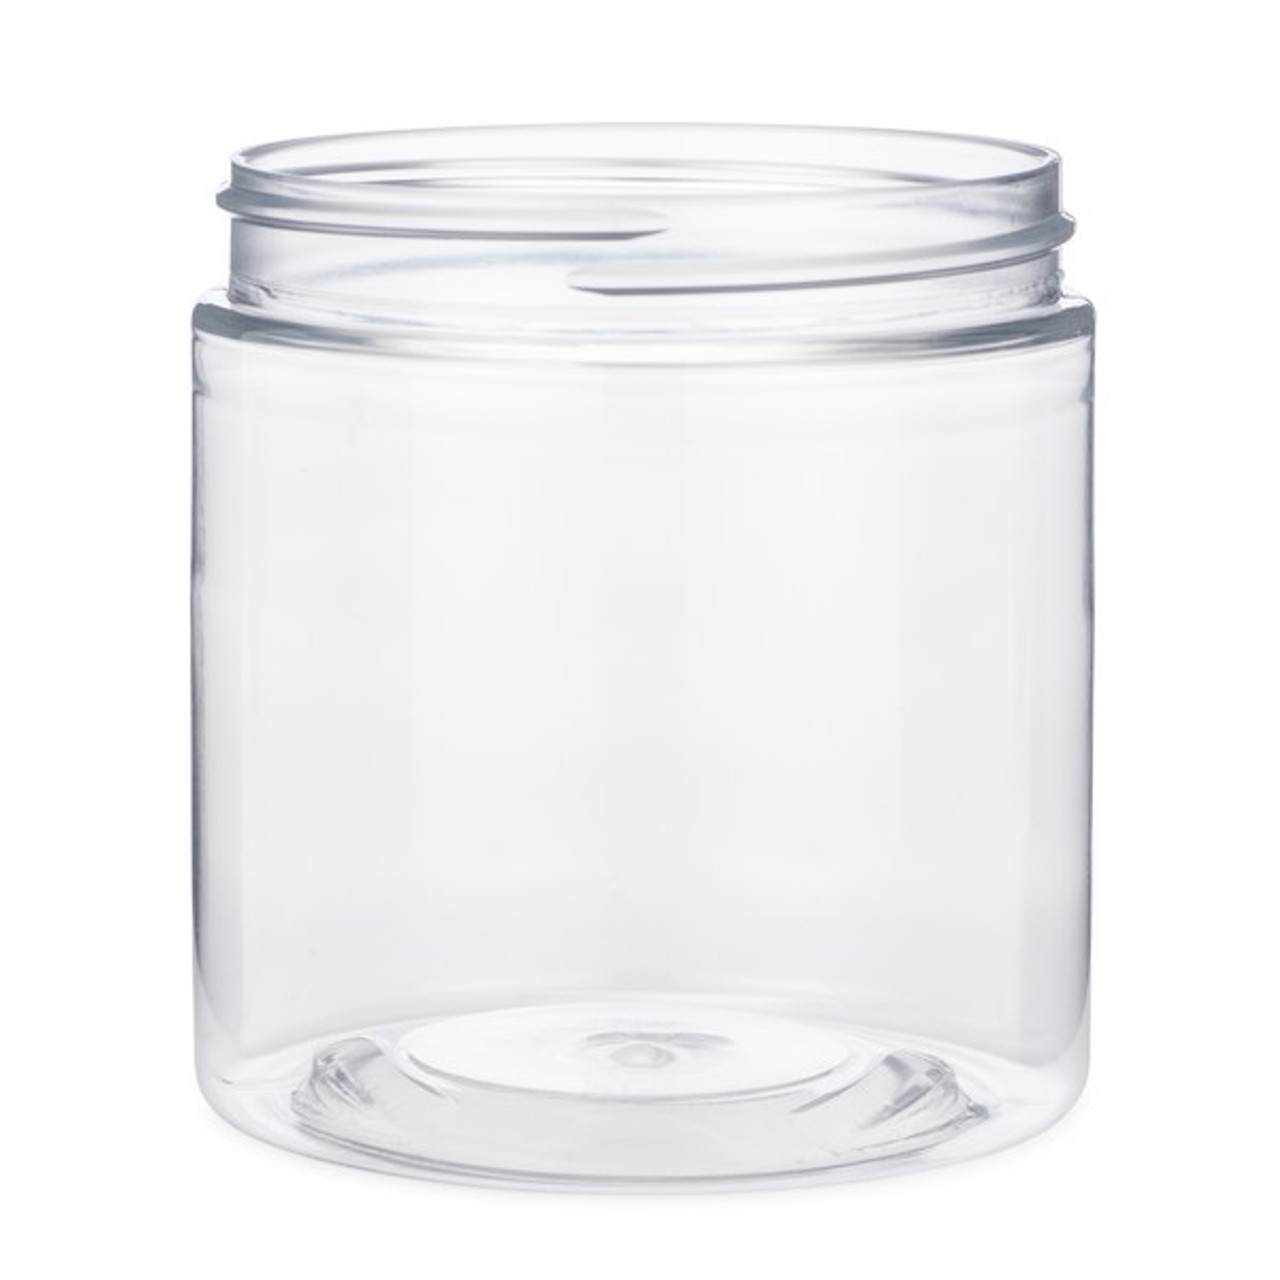 8 oz Clear Tall Glass Jar with Black Lid